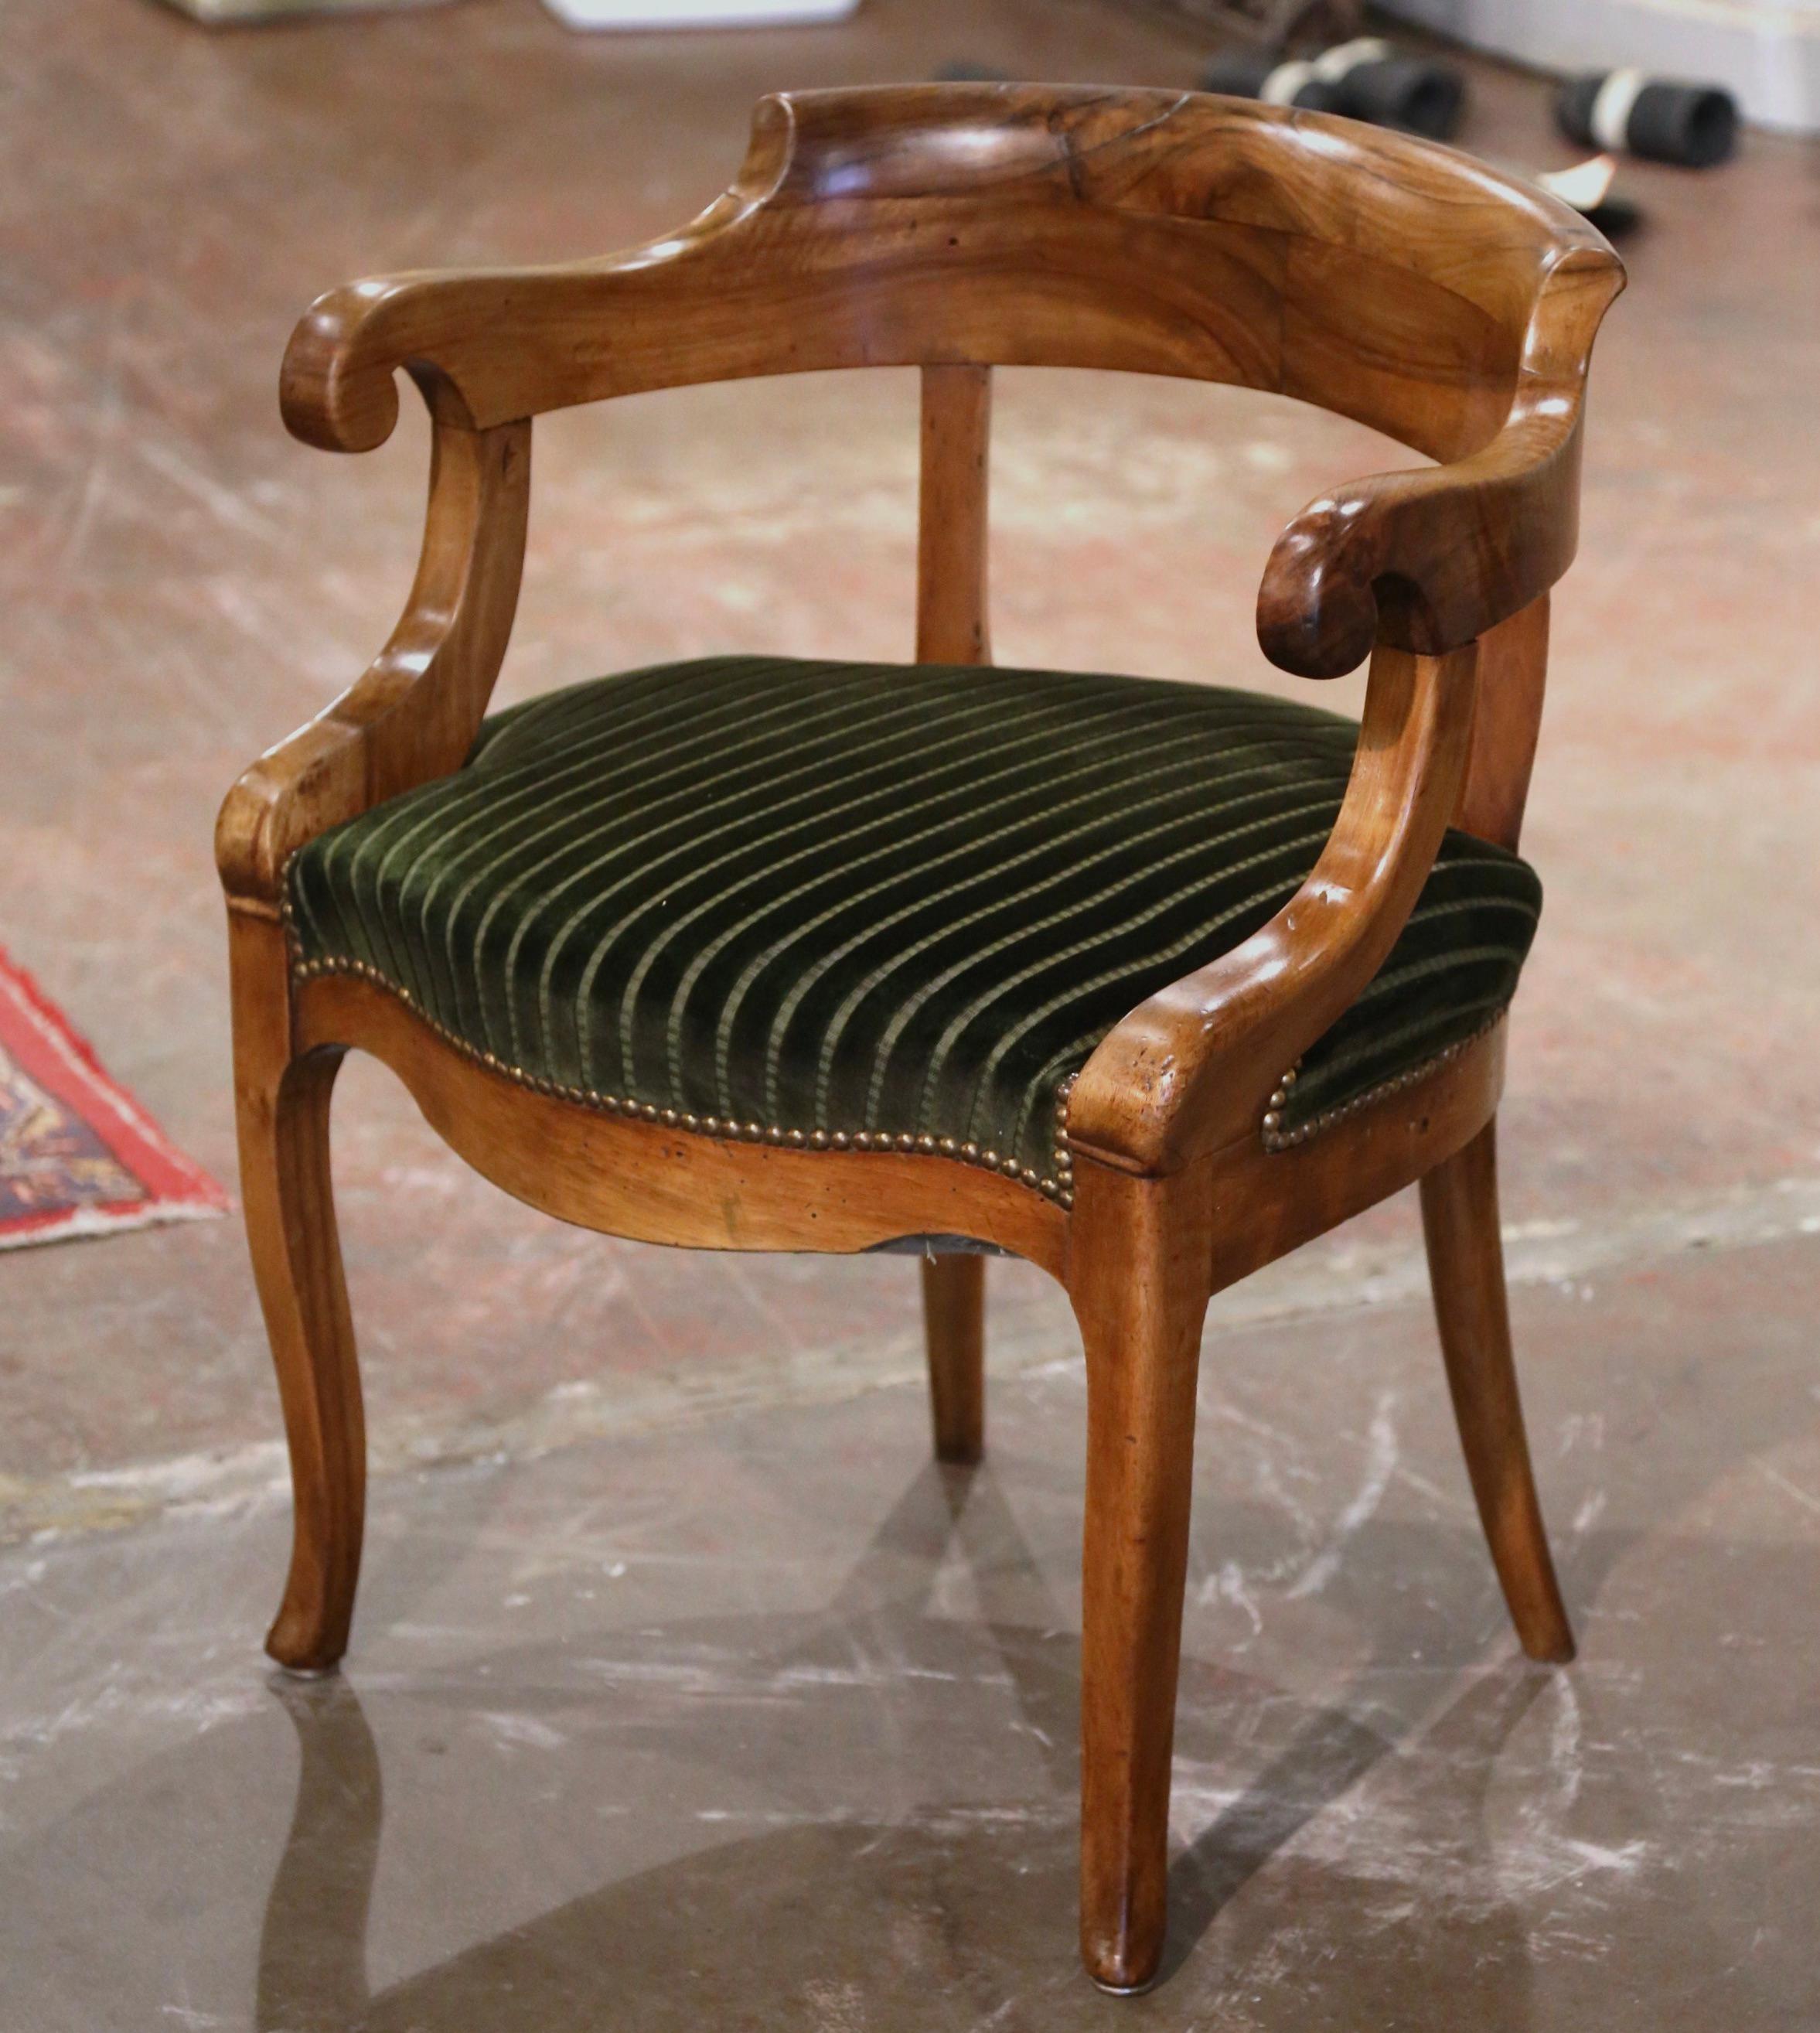 Décorez un bureau avec cet élégant fauteuil ancien. Fabriqué en France, vers 1860, et construit en noyer, le fauteuil repose sur des pieds cabriole se terminant par des pieds à volutes, sur un tablier festonné et en bombe. La chaise présente un